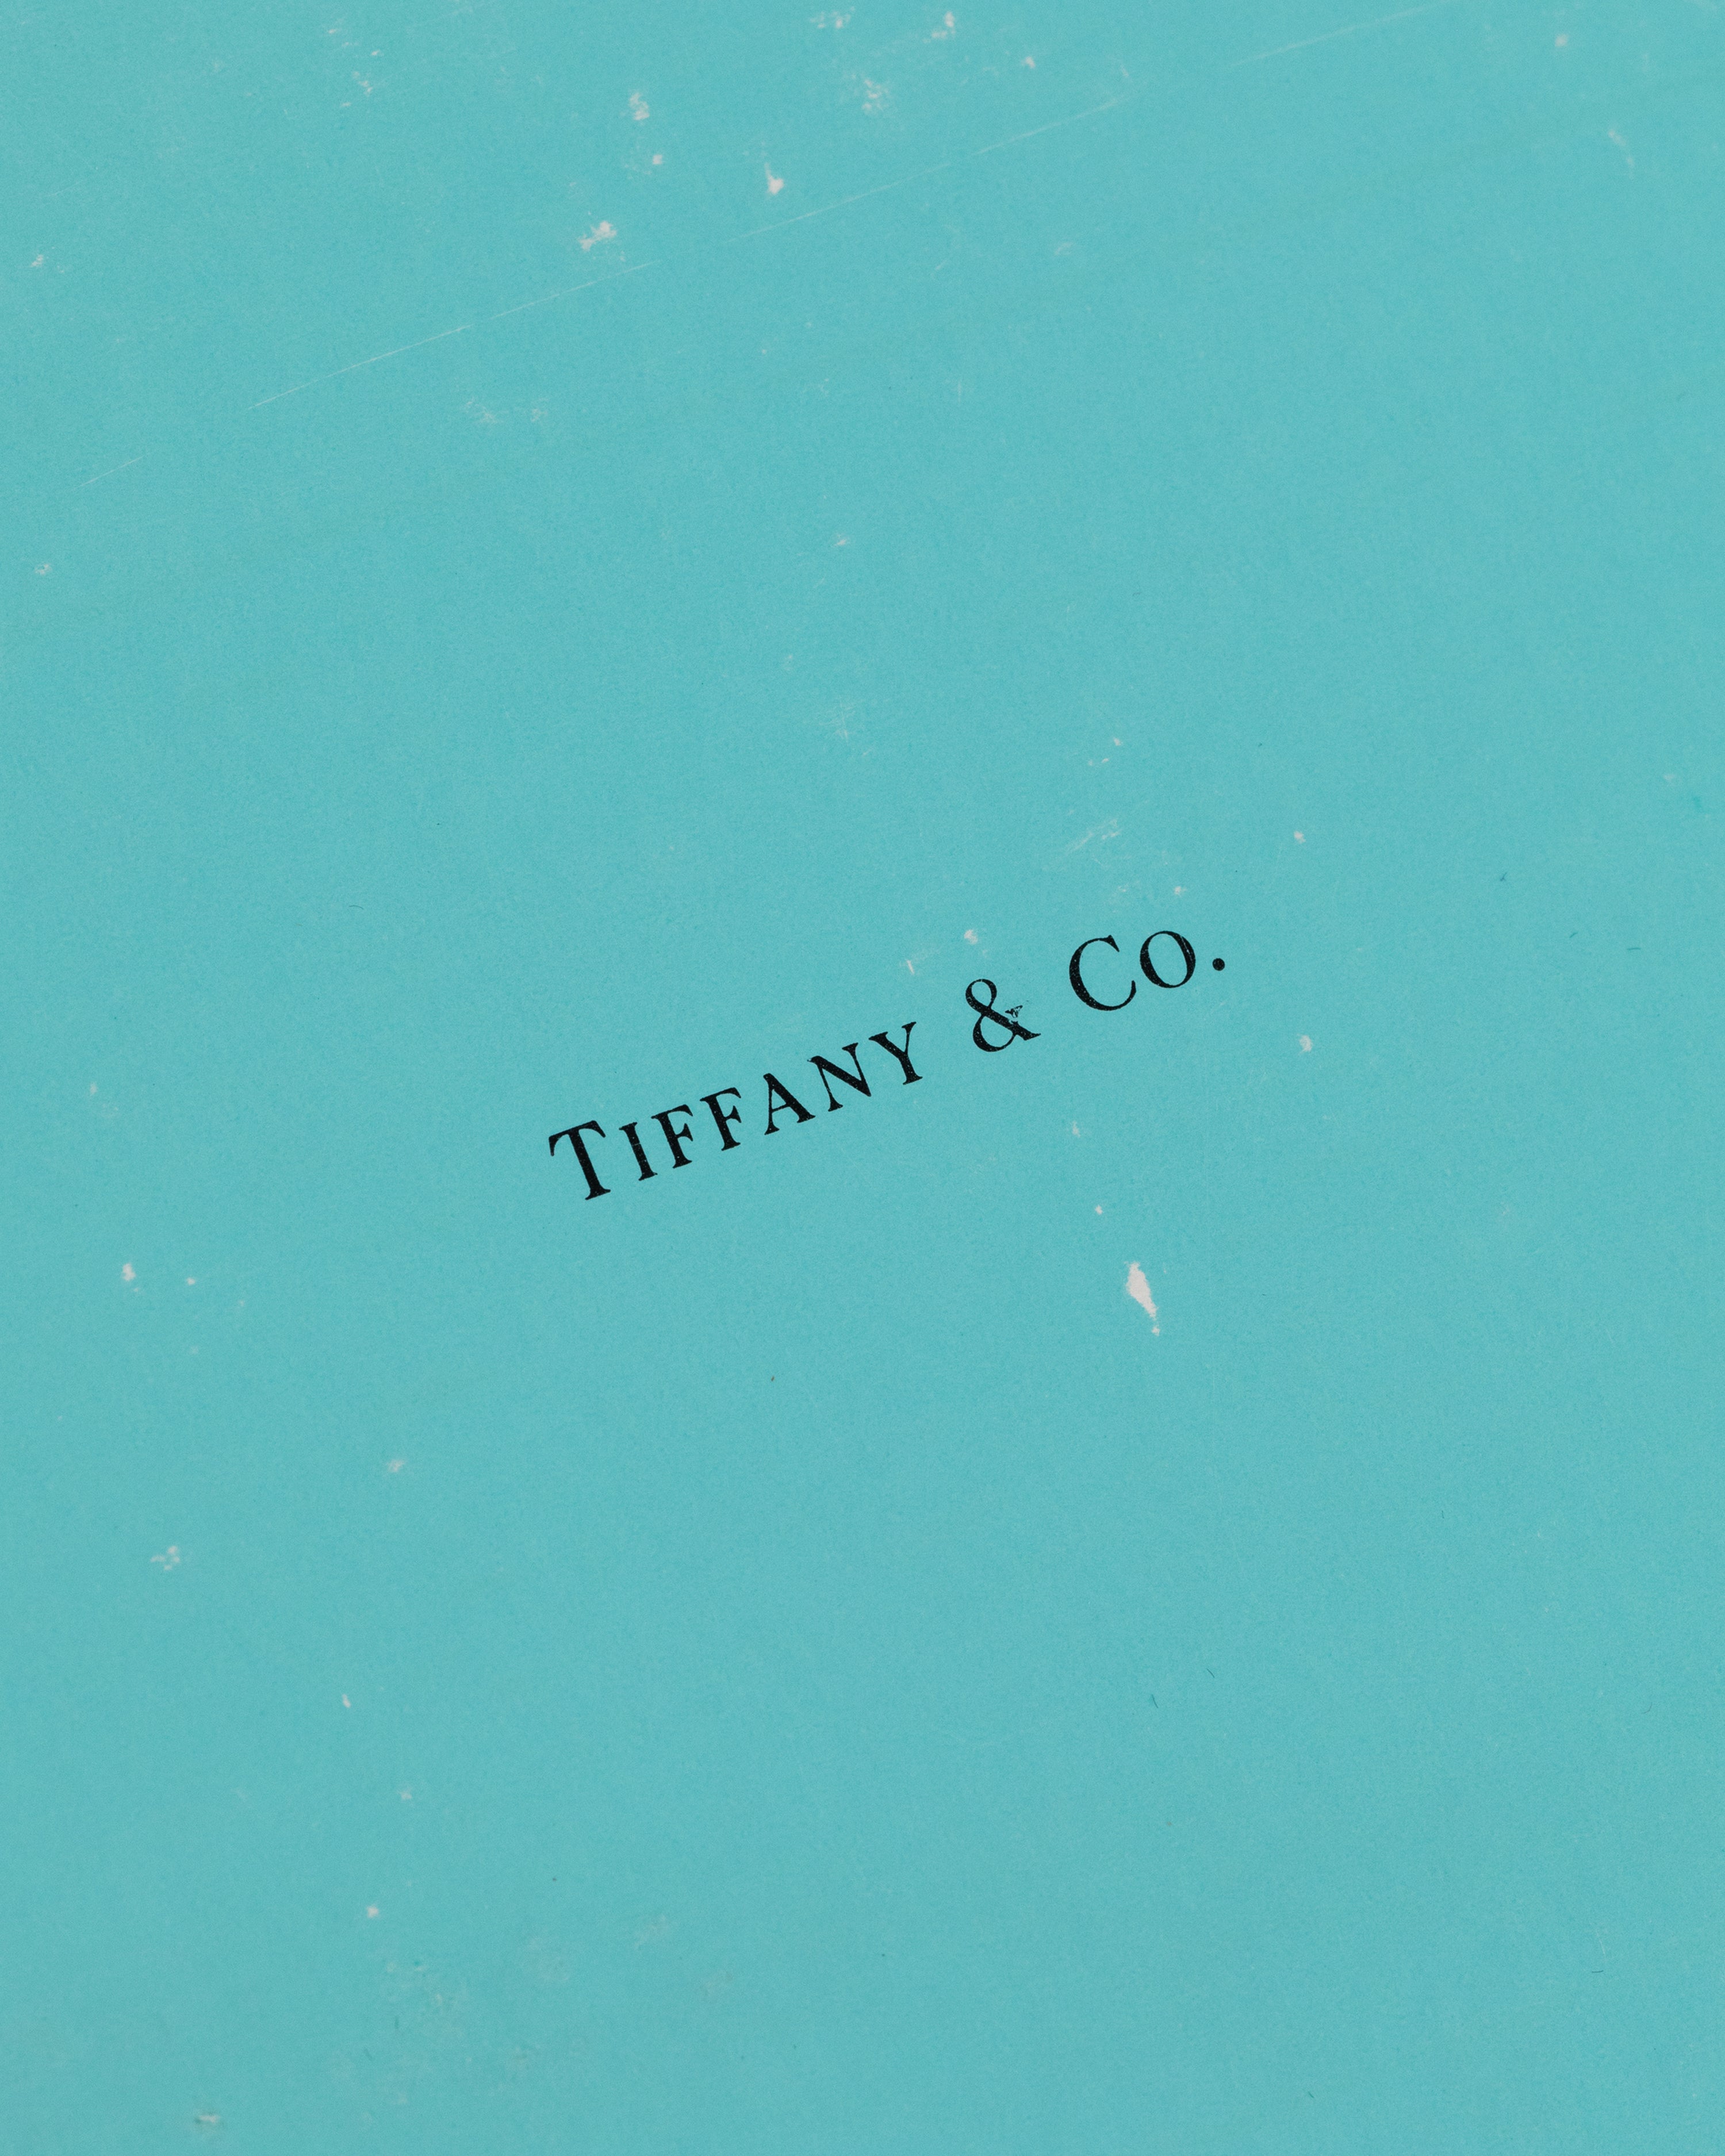 Tiffany & Co. Correspondence Card Box